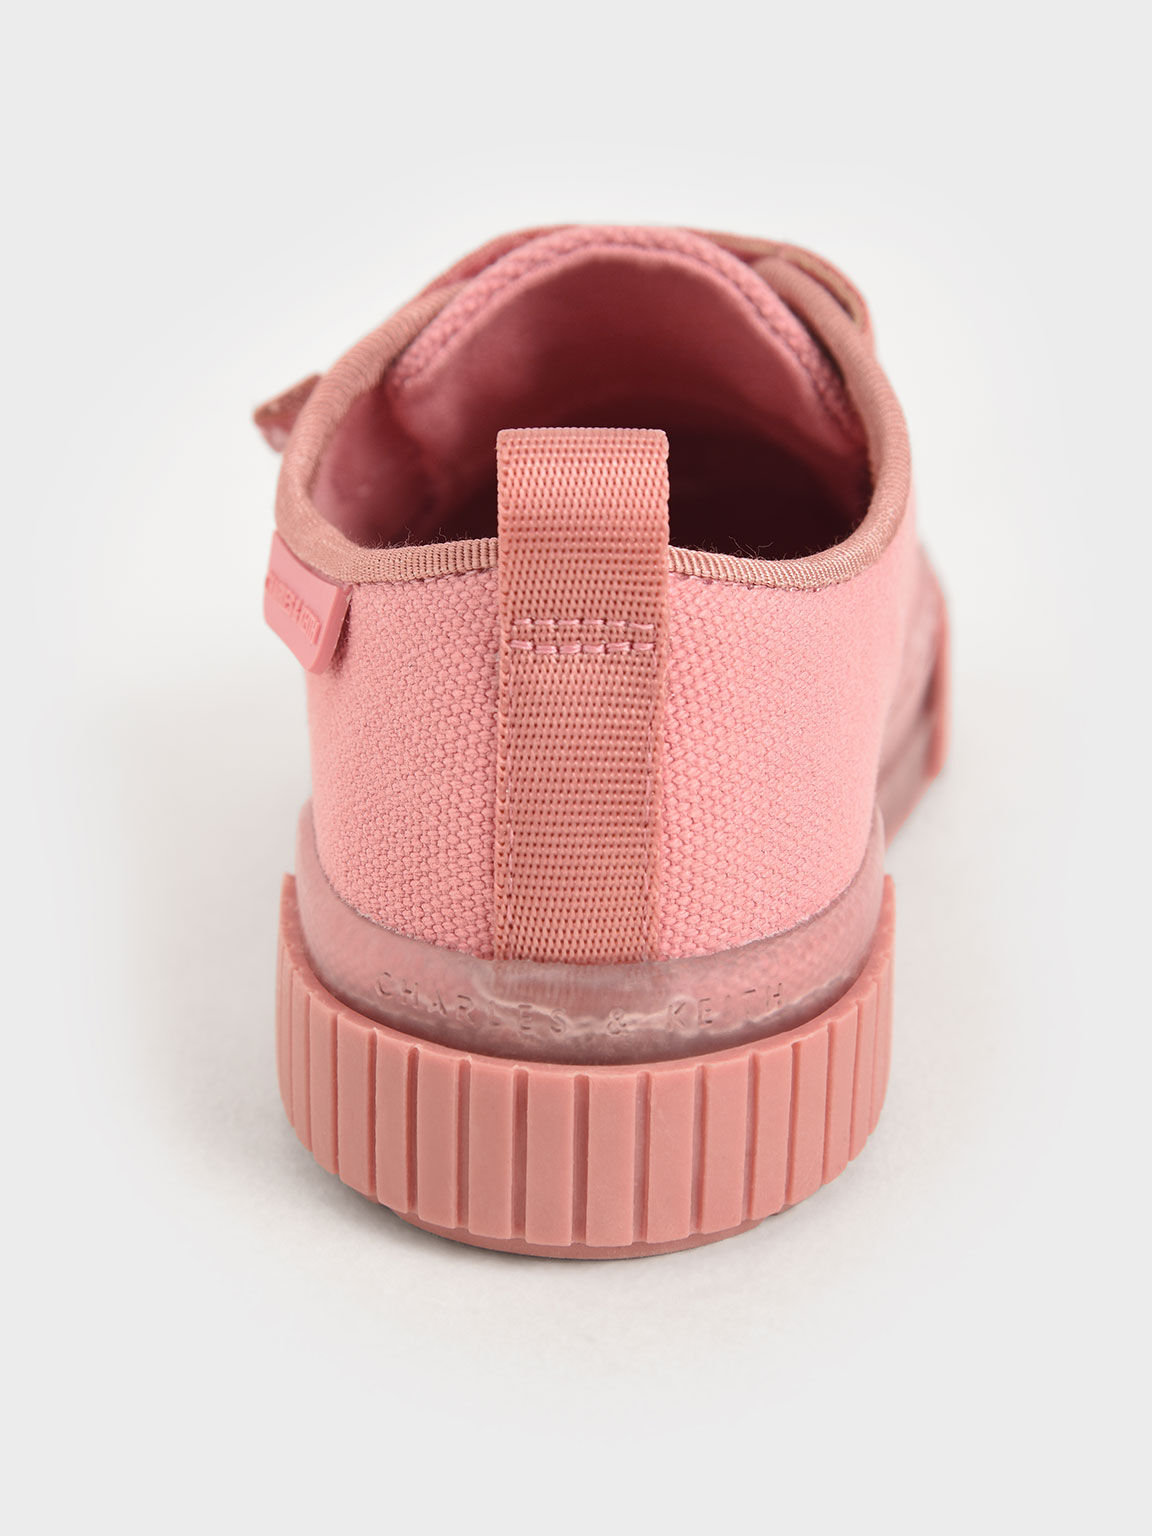 Girls' Organic Cotton Sneakers, Pink, hi-res